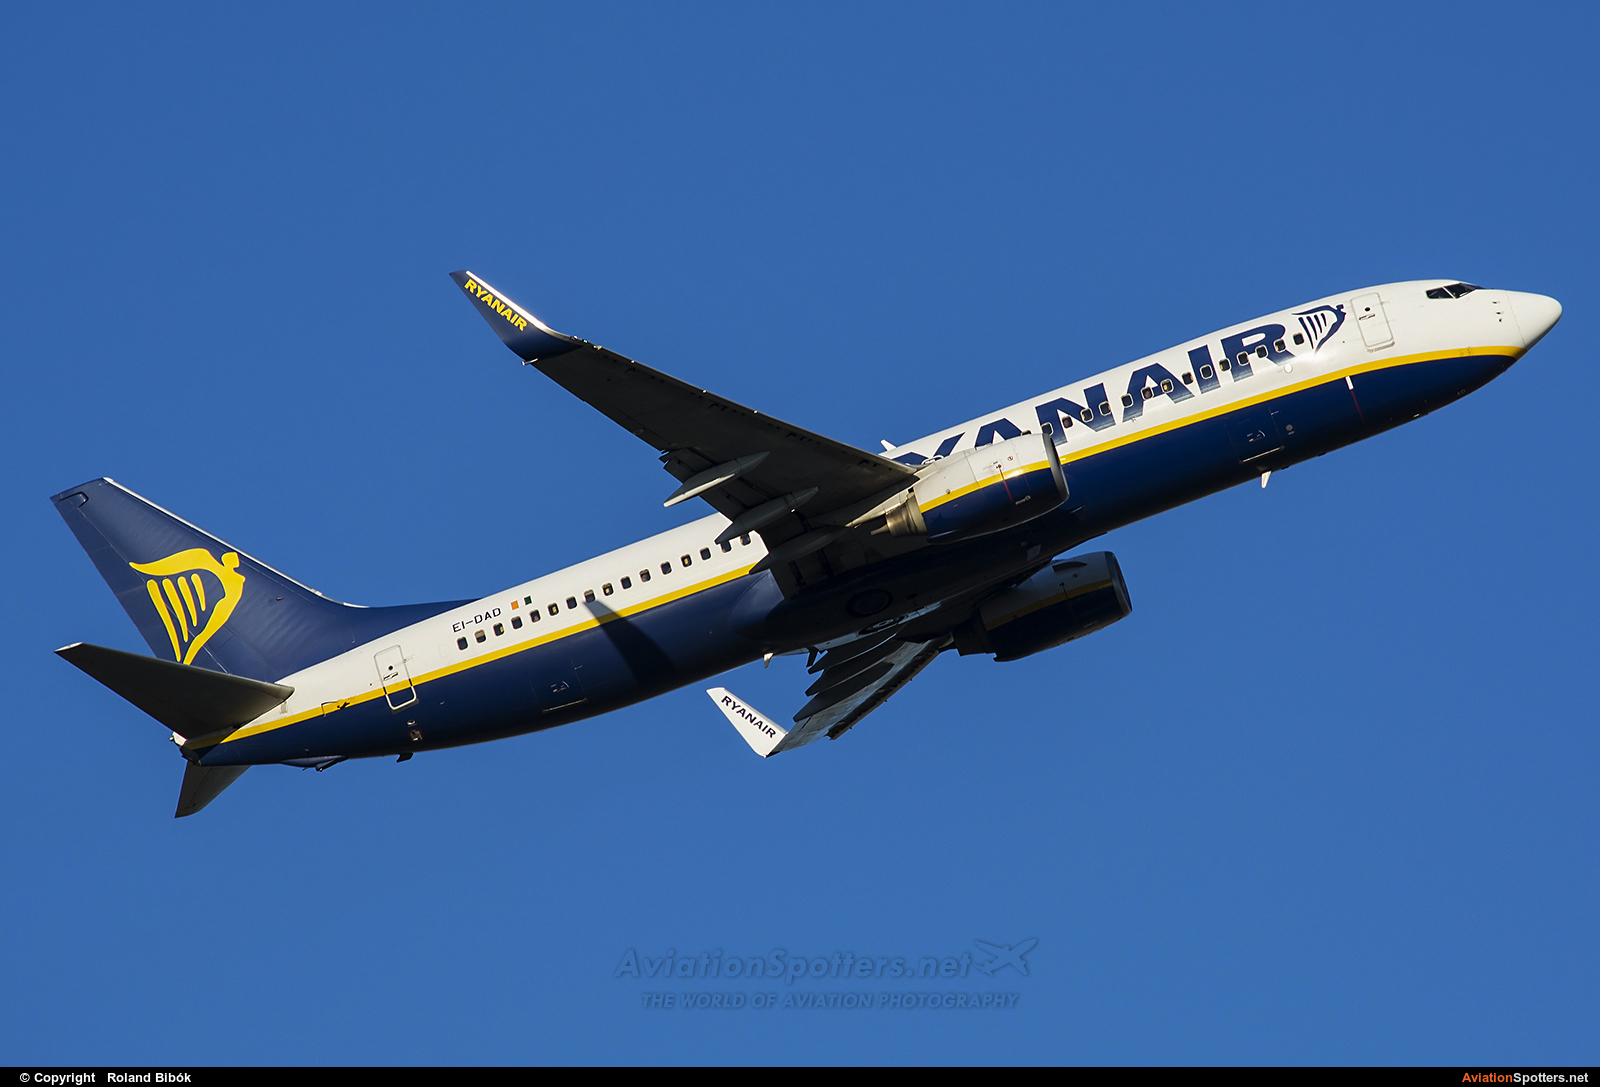 Ryanair  -  737-800  (EI-DAD) By Roland Bibók (Roland Bibok)